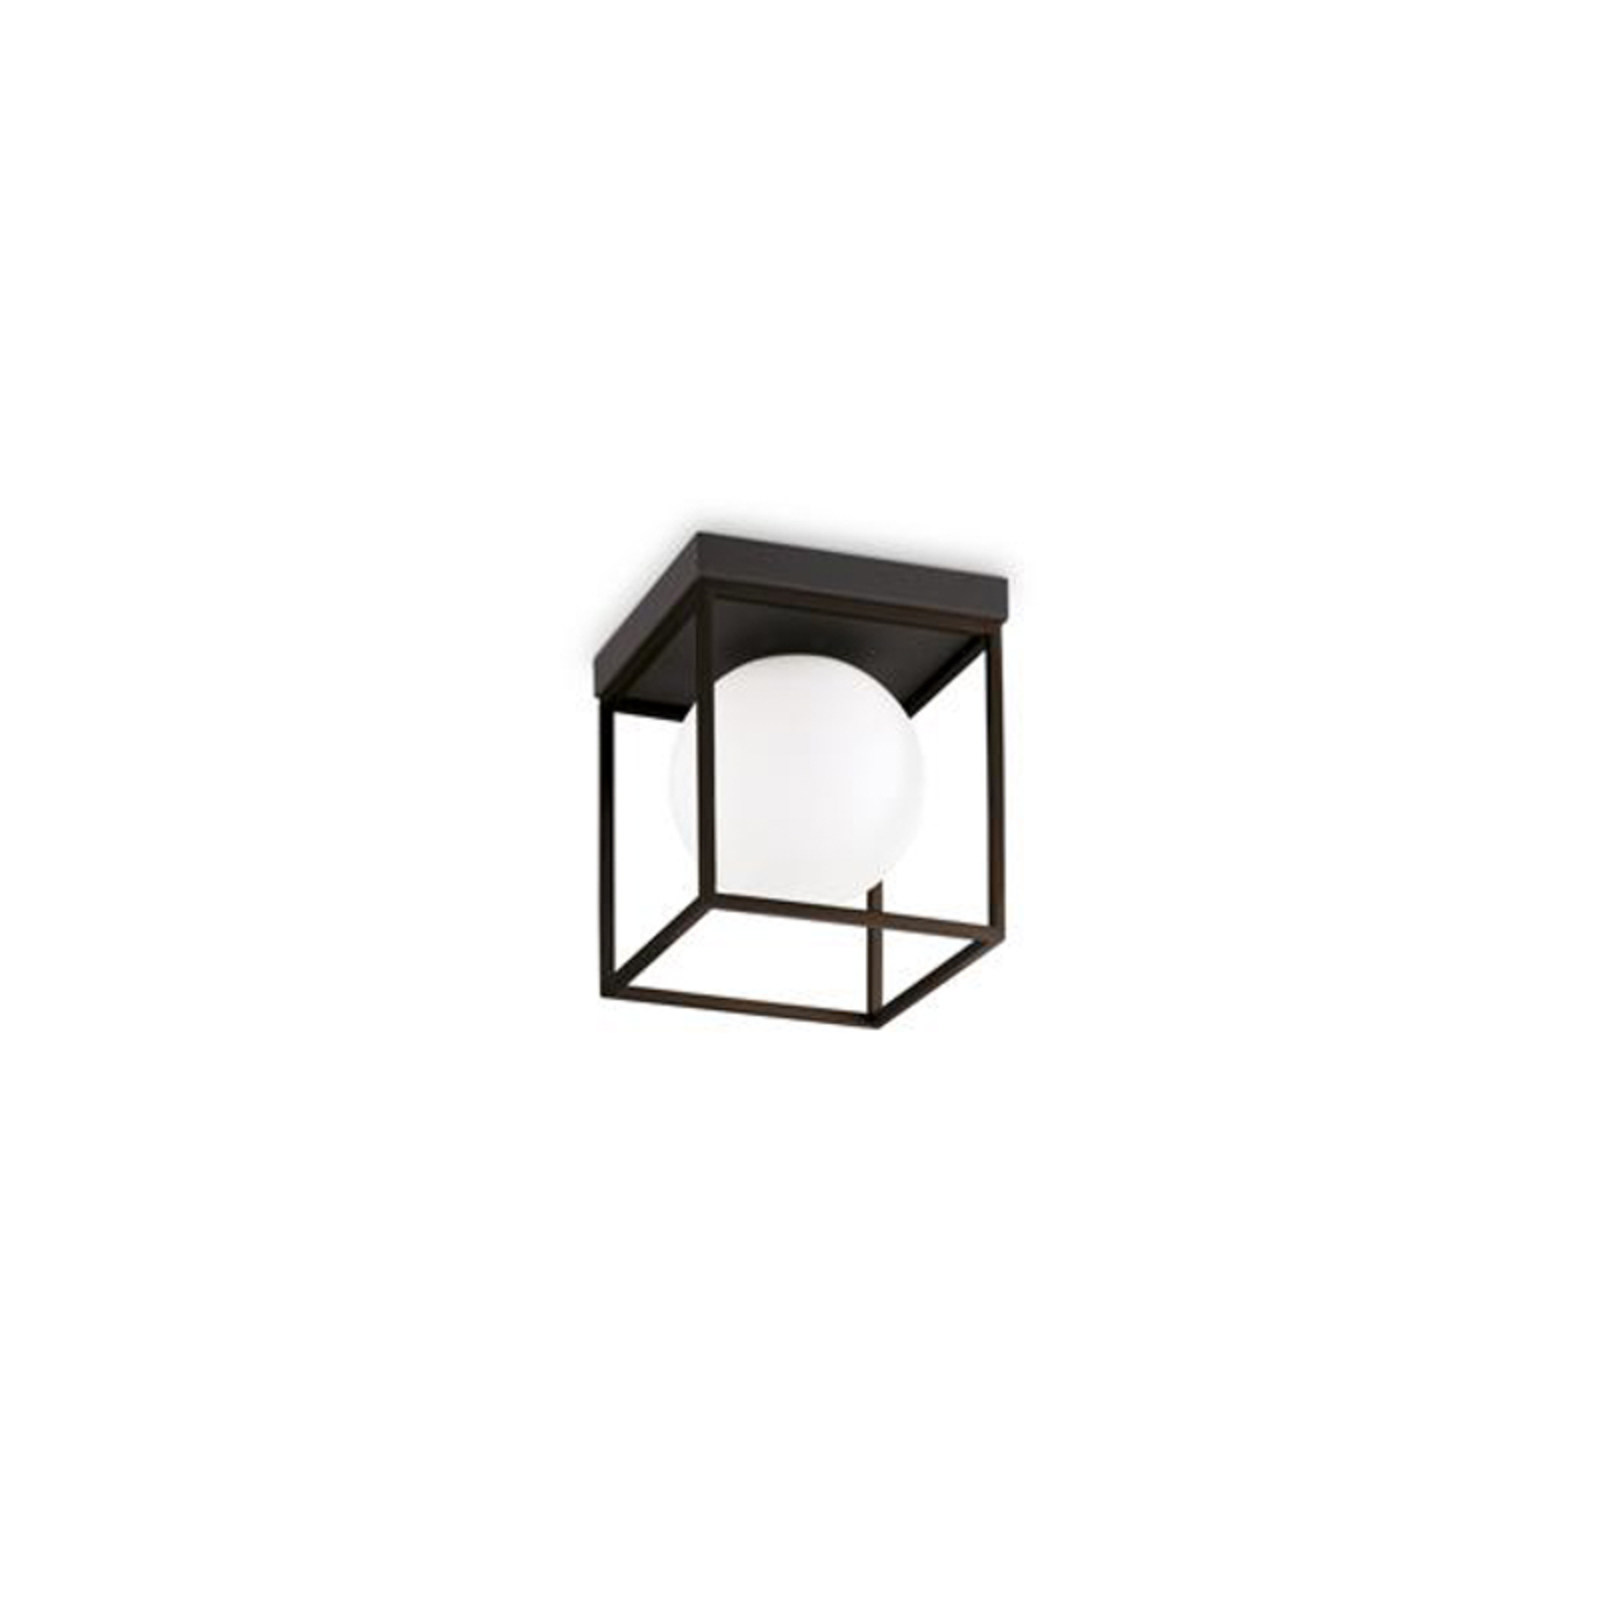 Stropné svietidlo Ideal Lux Lingotto, čierne, opálové sklo, 1 svietidlo